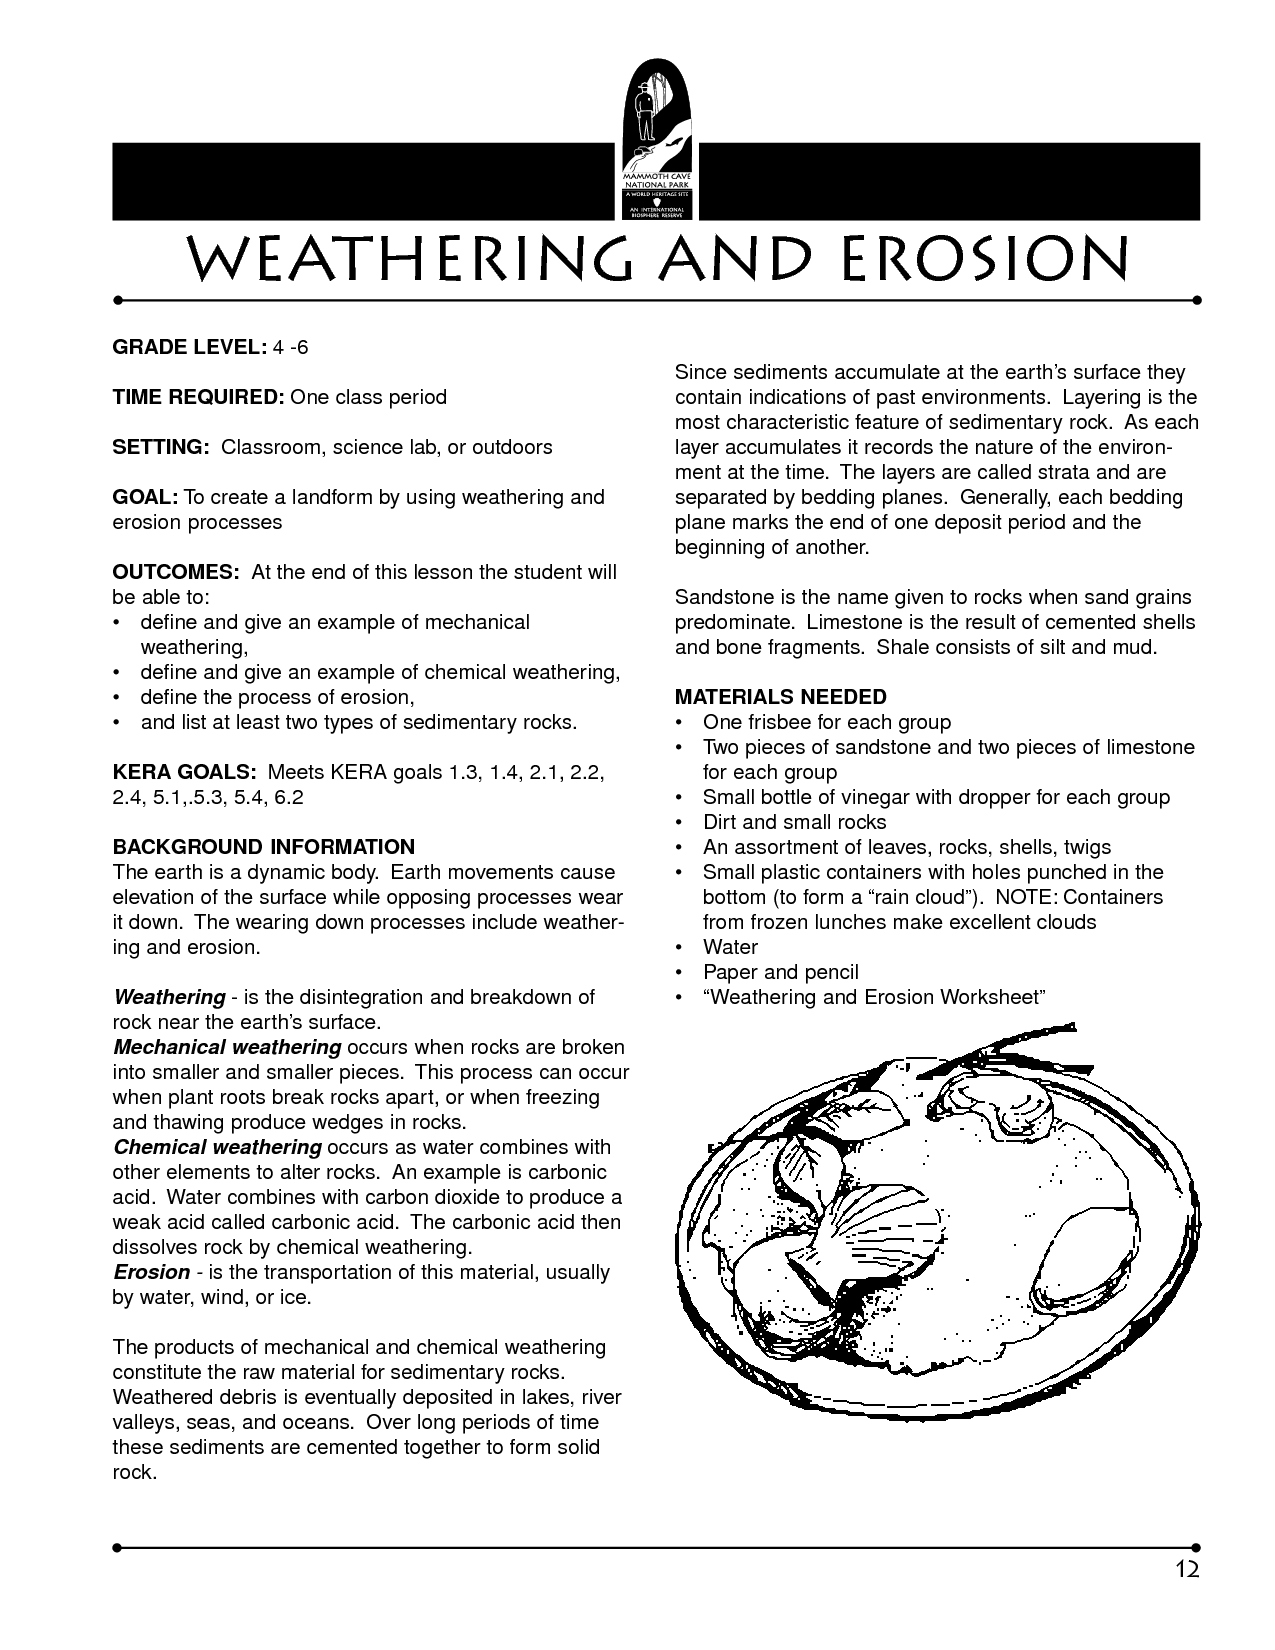 Weathering and Erosion Worksheet